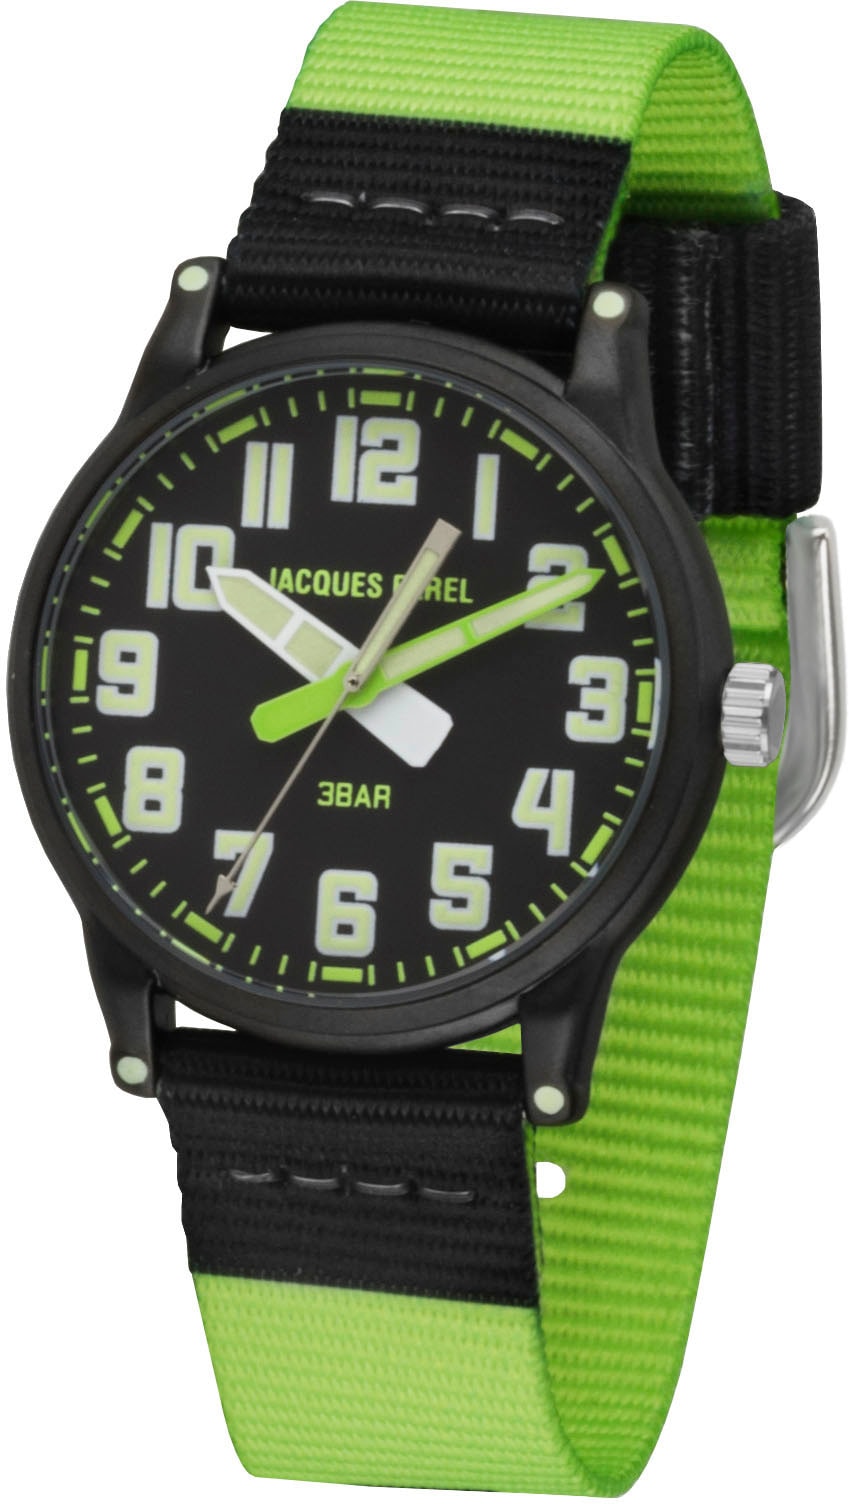 Jacques Farel Quarzuhr »KLM 03«, Armbanduhr, Kinderuhr, ideal auch als Geschenk